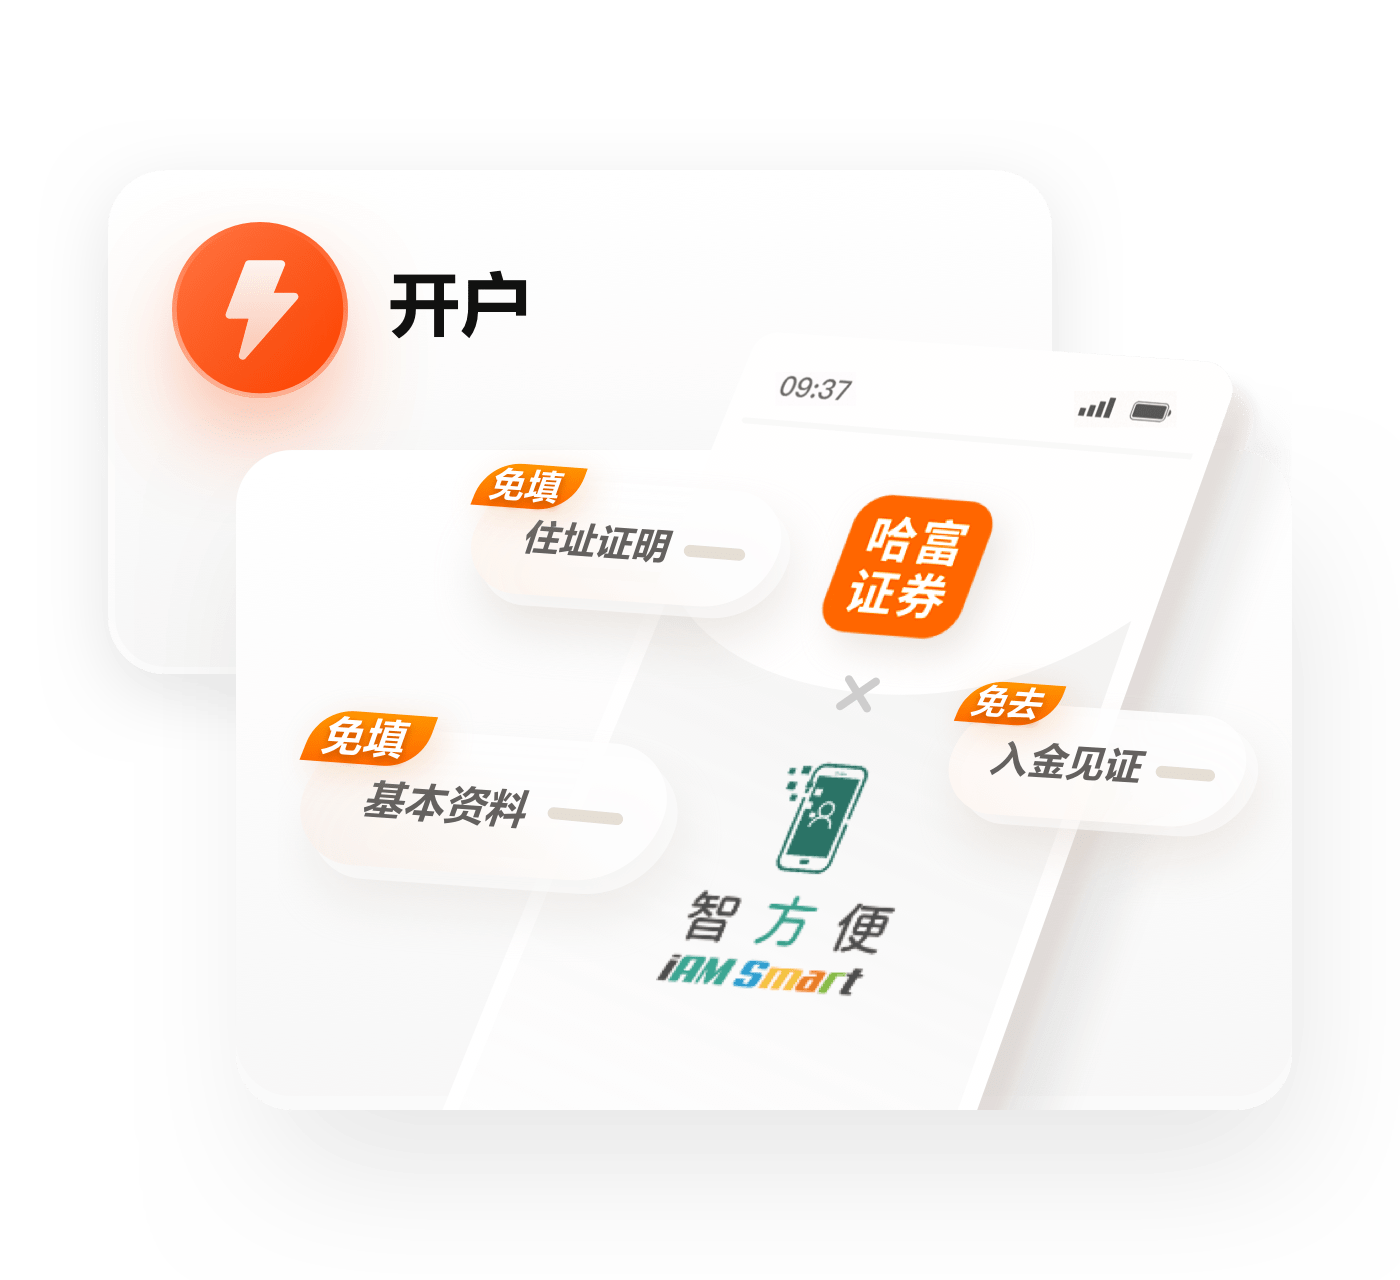 “智方便”由香港特区政府资讯科技总监办公室开发及管理。用户现可通过智方便于哈富证券App上完成港美股开户认证程序。